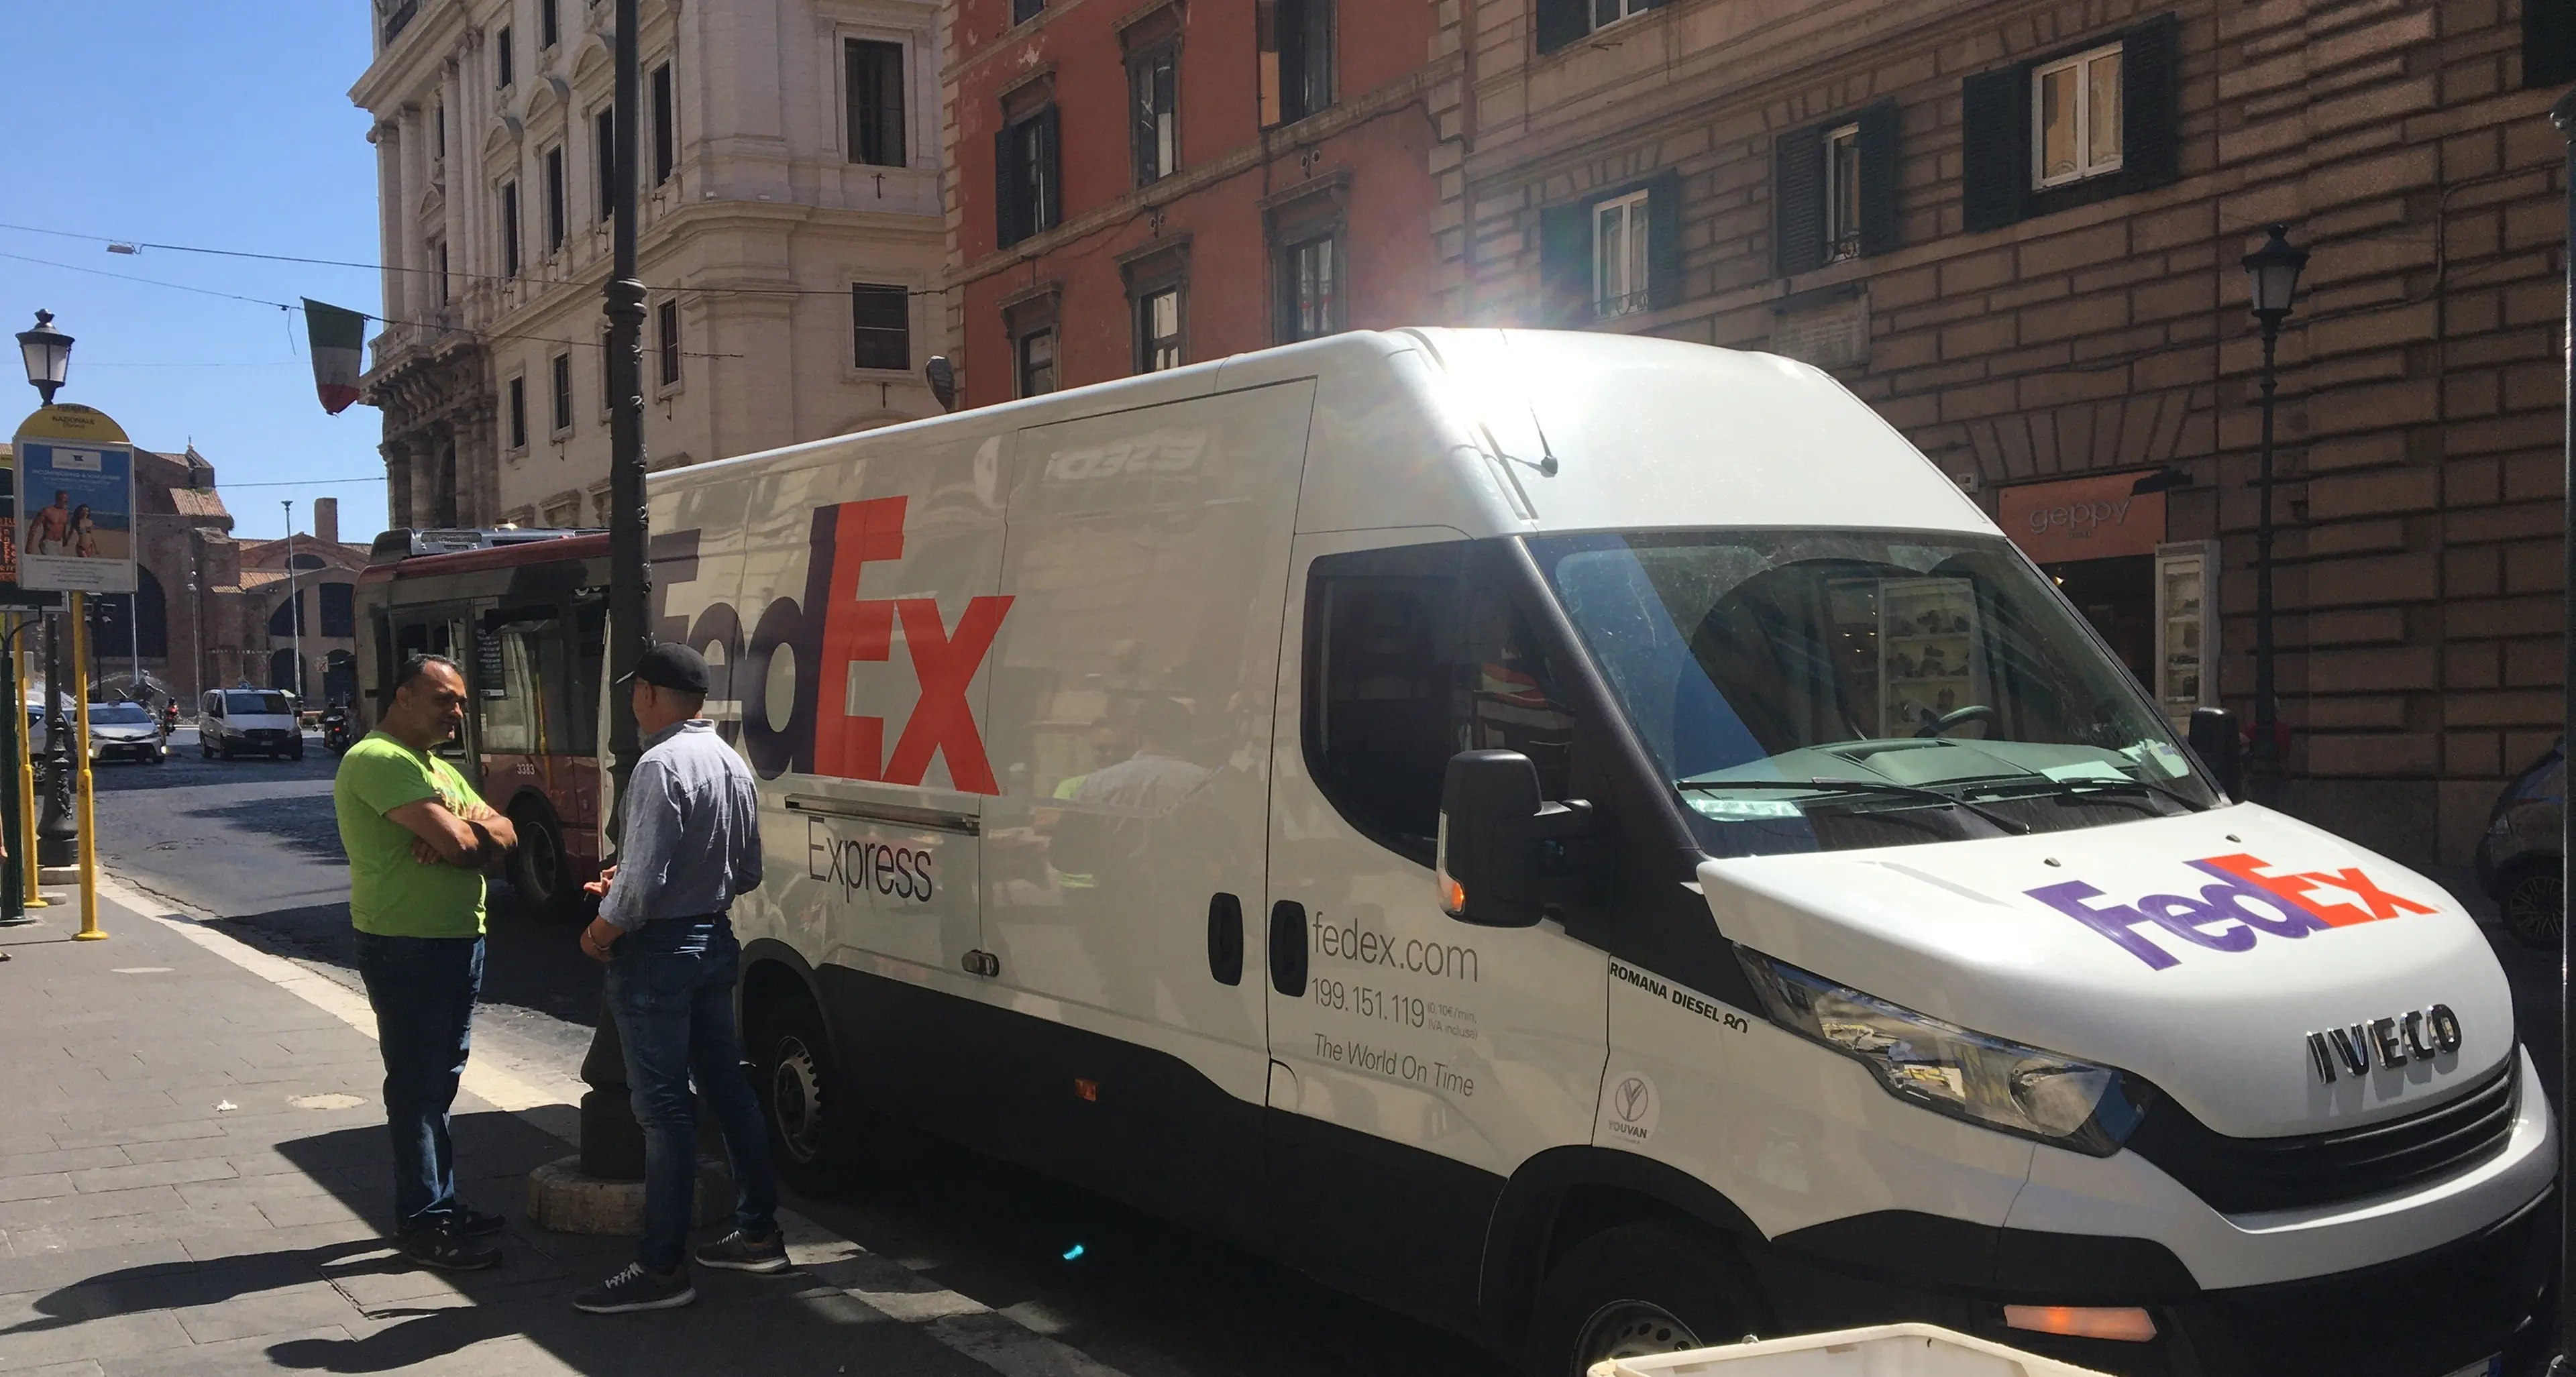 Calenzano (Firenze), Fedex internalizza oltre 100 facchini